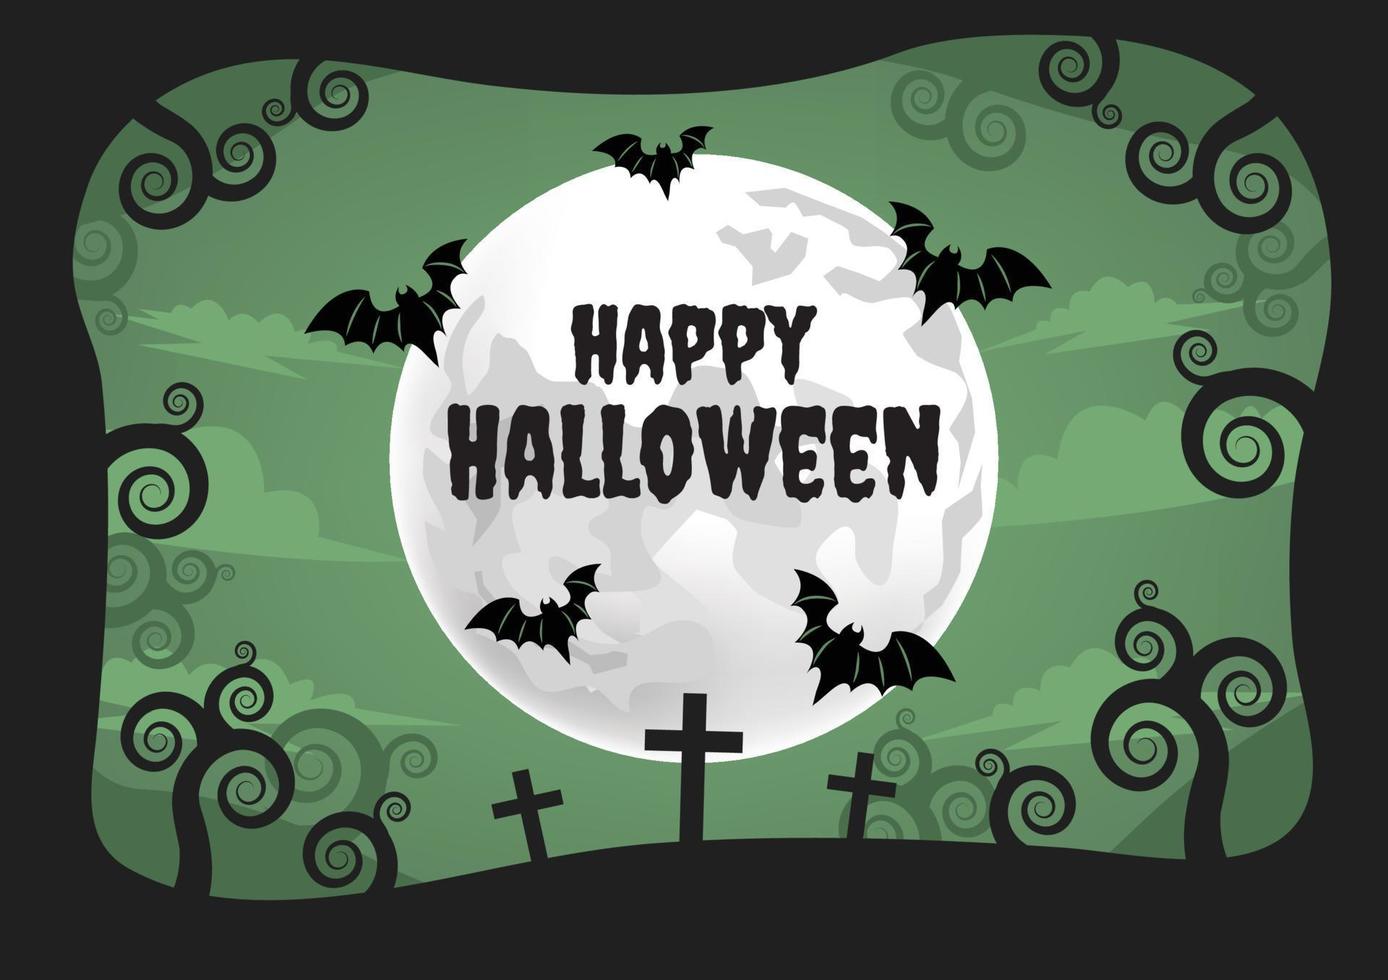 halloween spooky banner for halloween content vector design